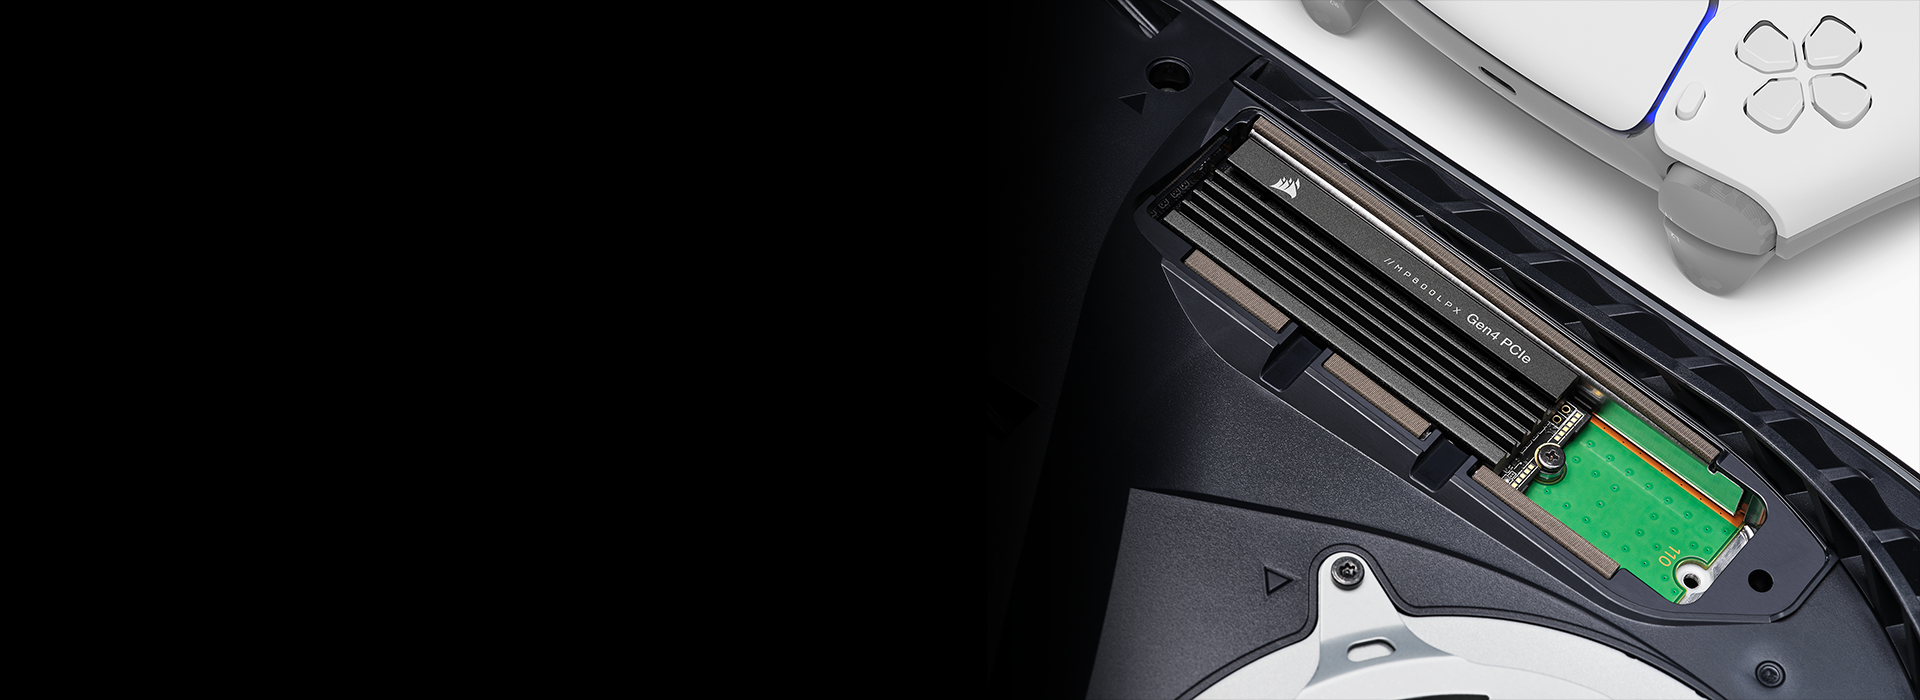 SSD Corsair MP600 Pro LPX specjalnie do Sony PS5. Więcej szybkiej